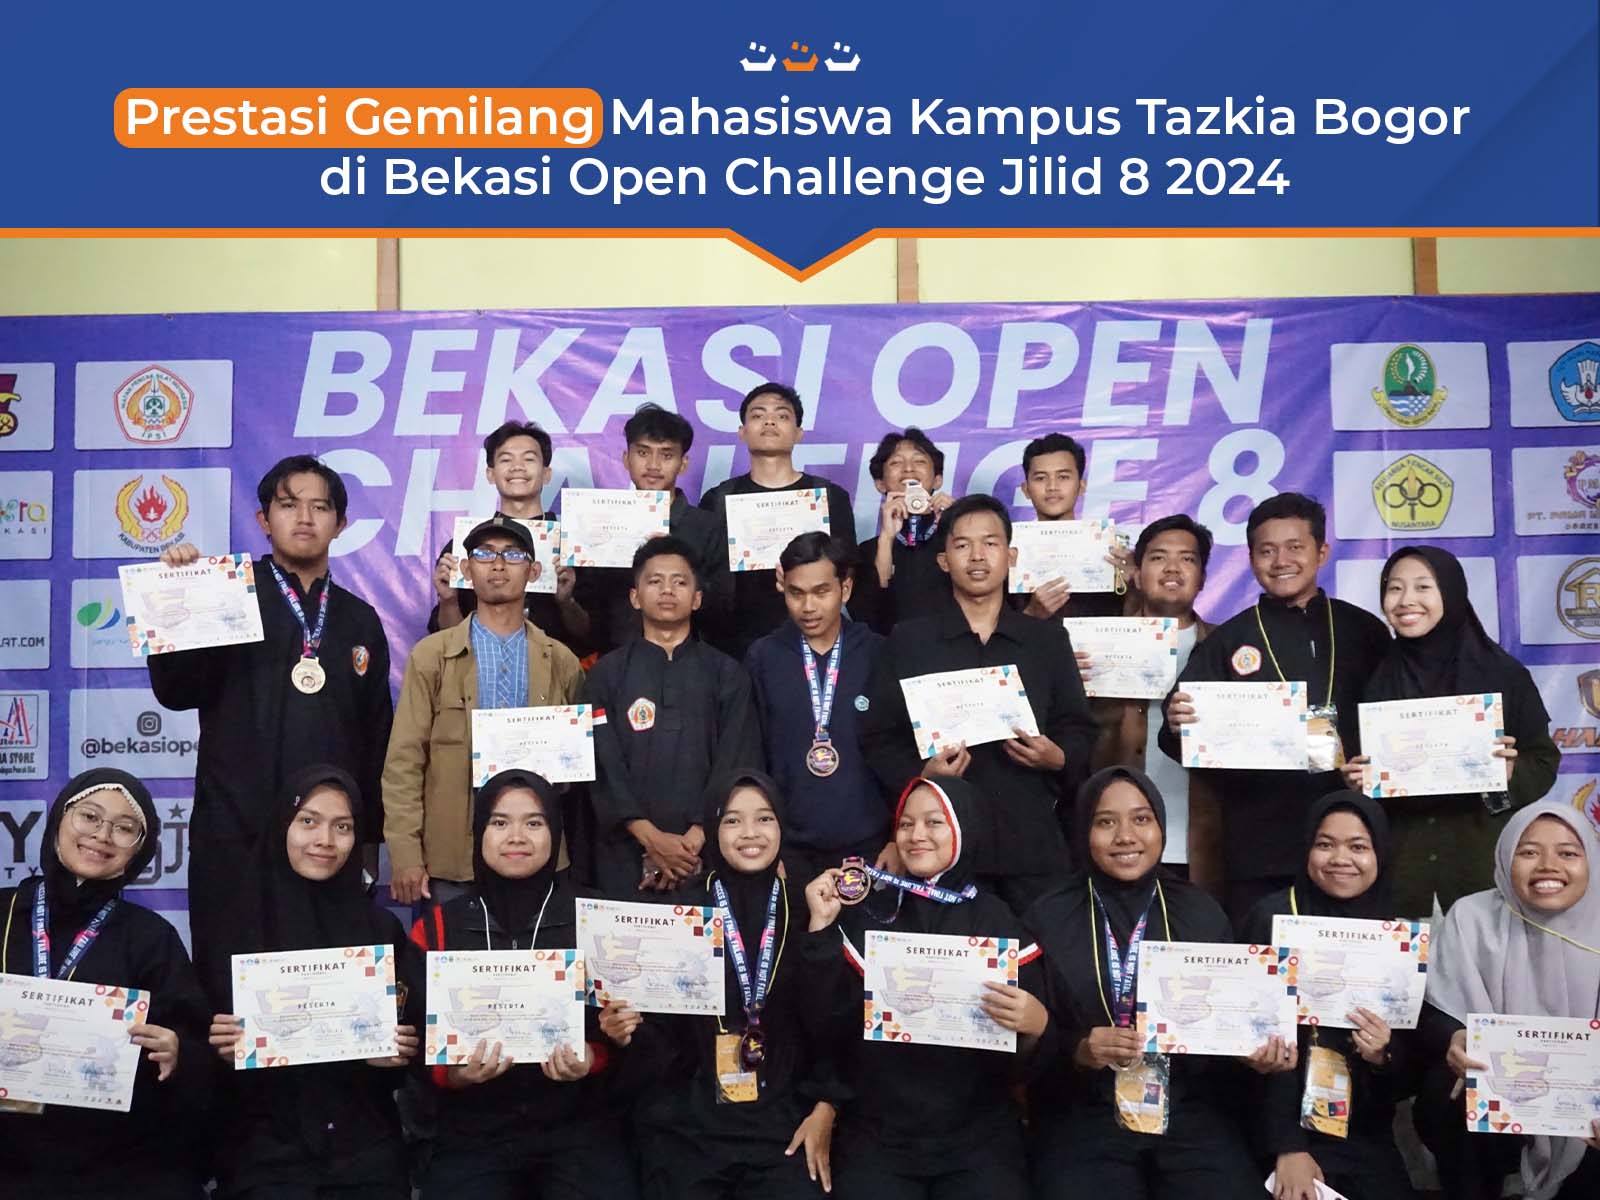 Prestasi Gemilang Mahasiswa Kampus Tazkia Bogor di Bekasi Open Challenge Jilid 8 2024